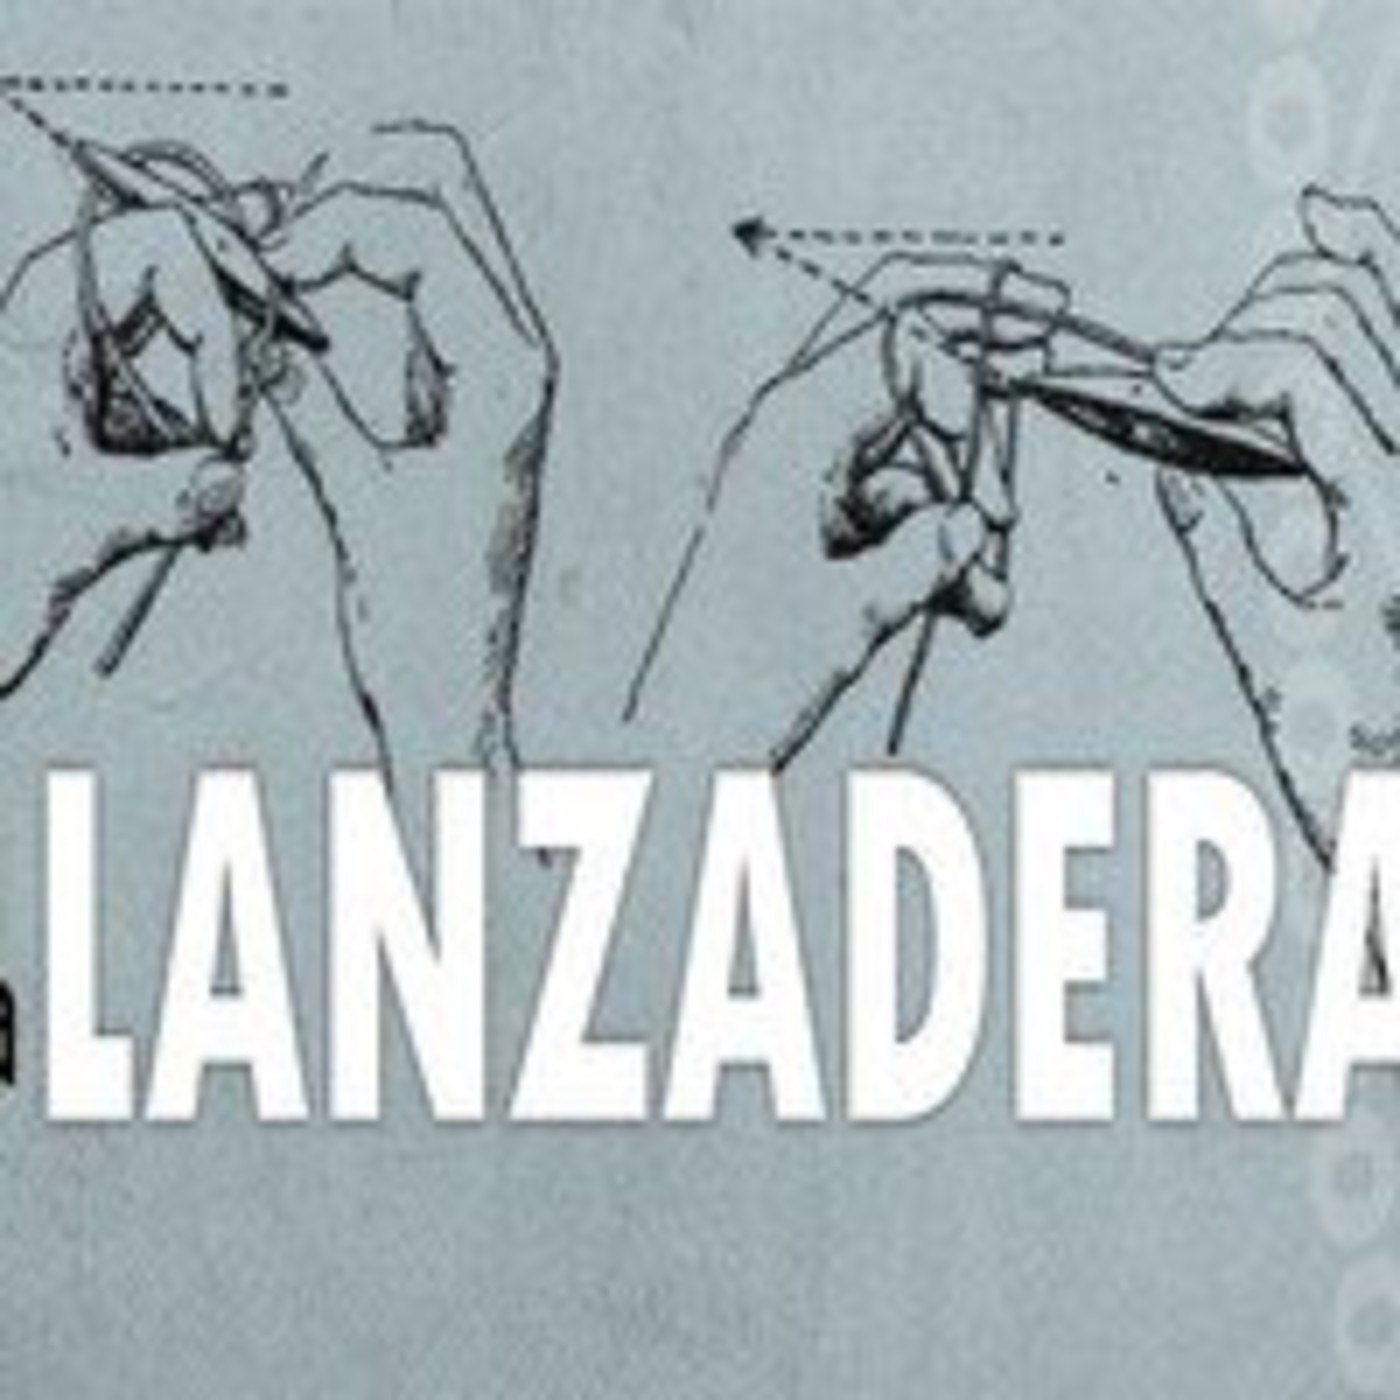 La Lanzadera